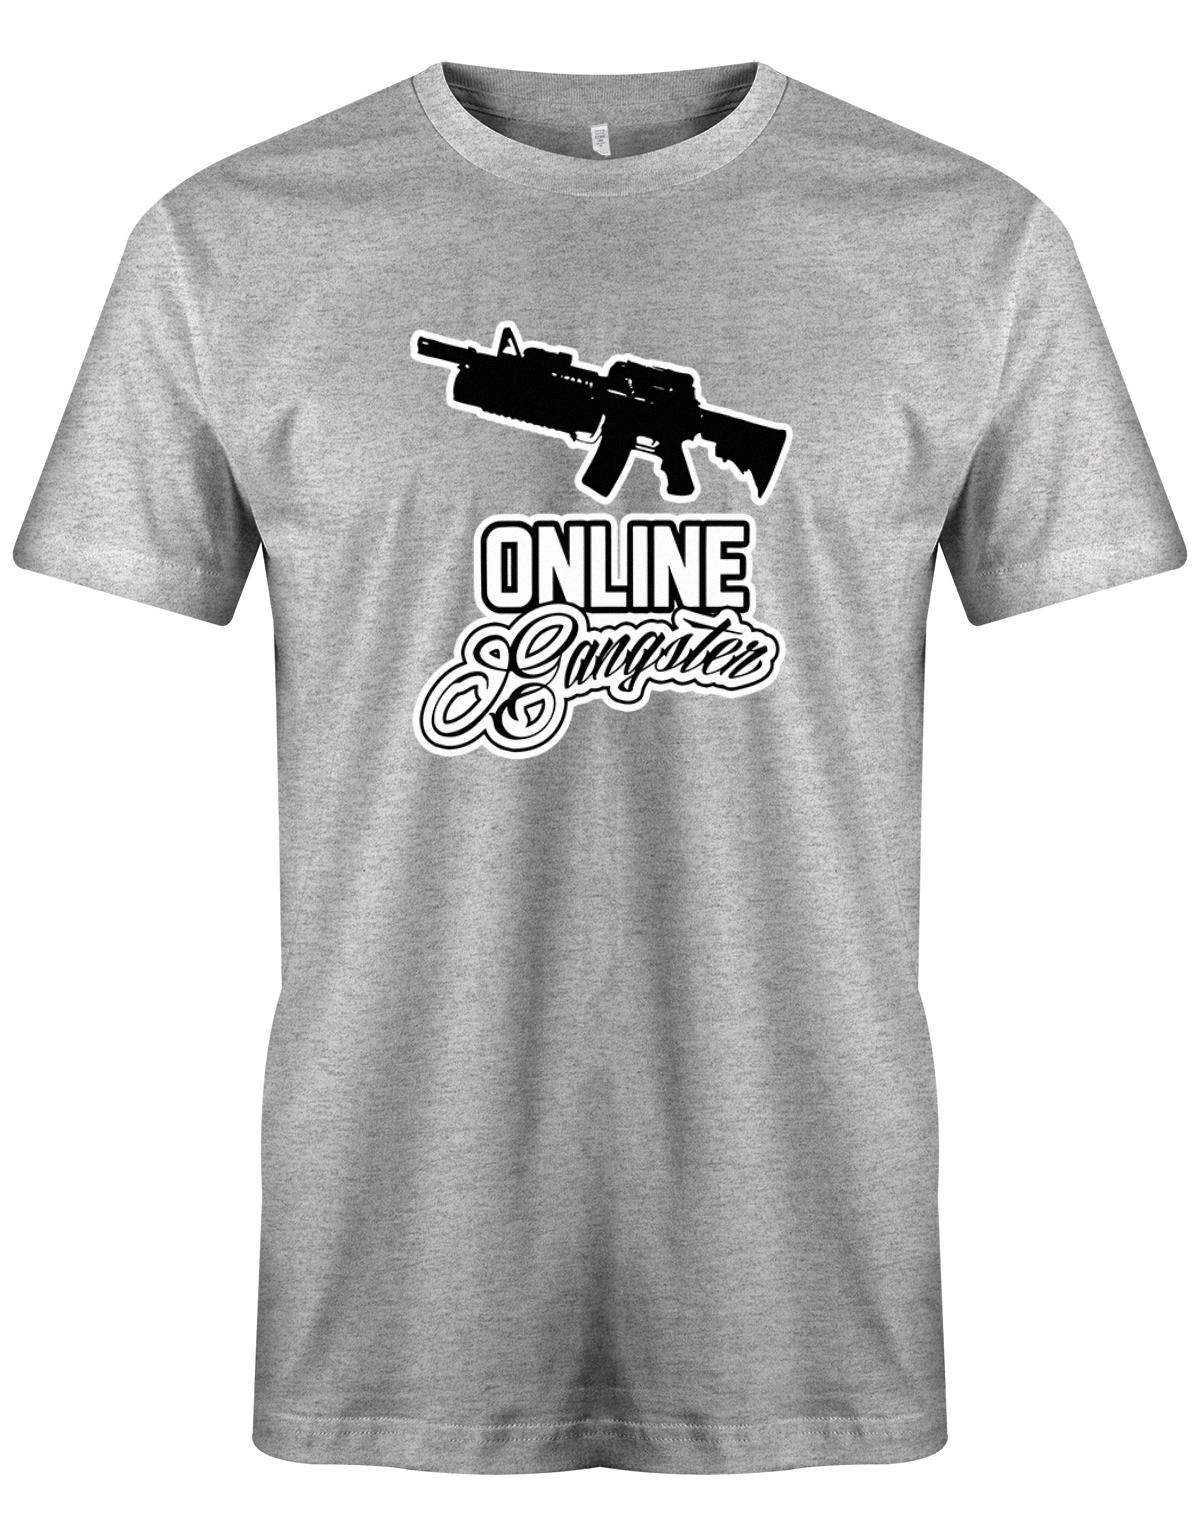 Online-Gangster-Herren-Shirt-Grau